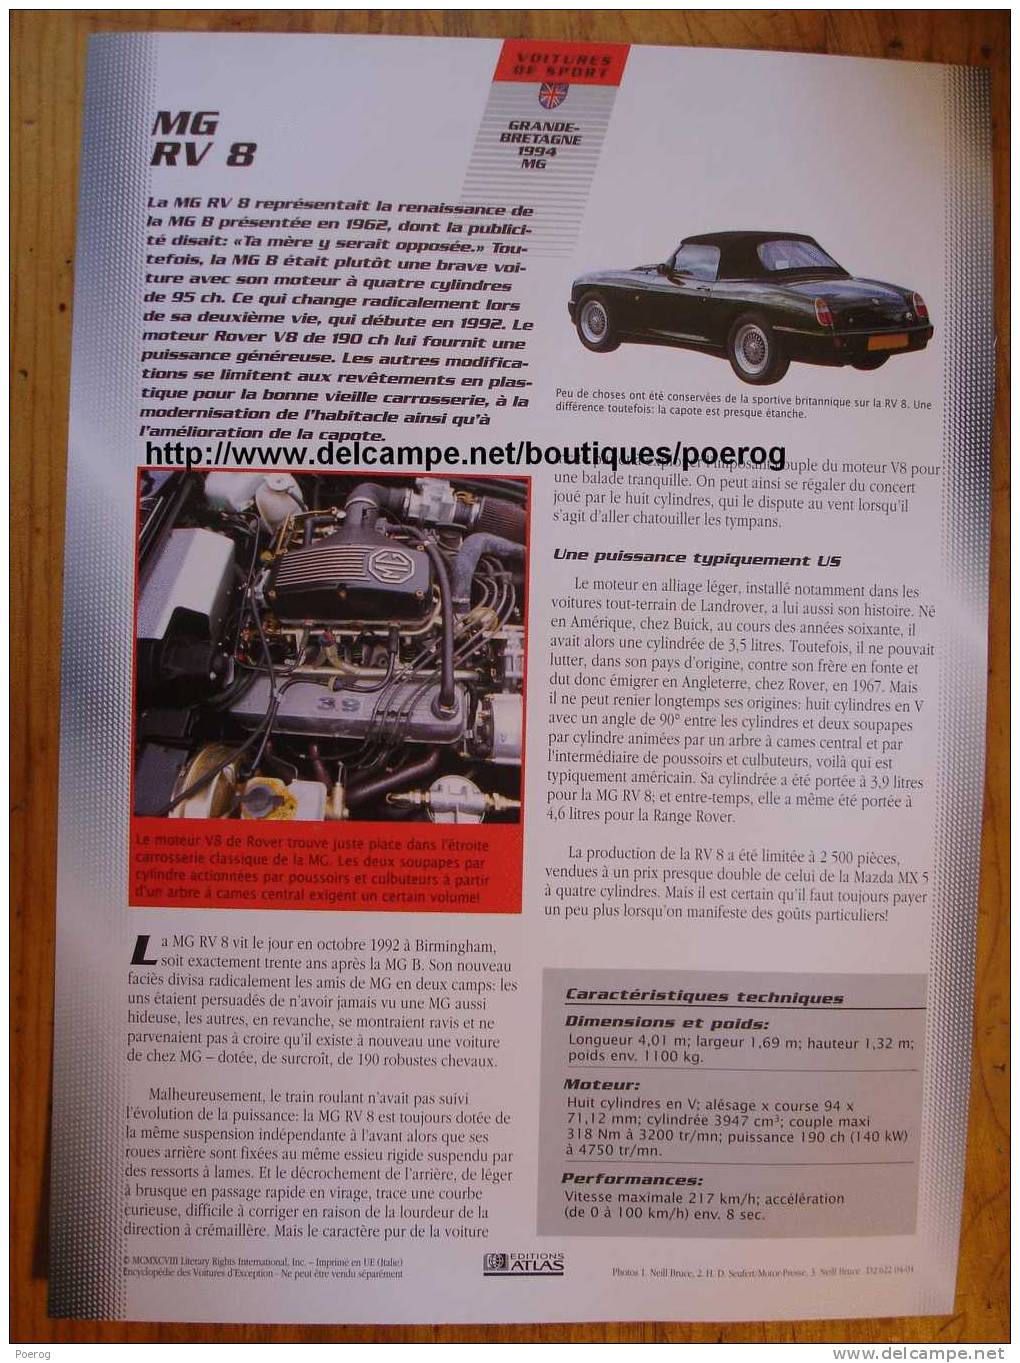 MG RV 8 - FICHE VOITURE GRAND FORMAT (A4) - 1998 - Auto Automobile Automobiles Voitures Car Cars - Autos